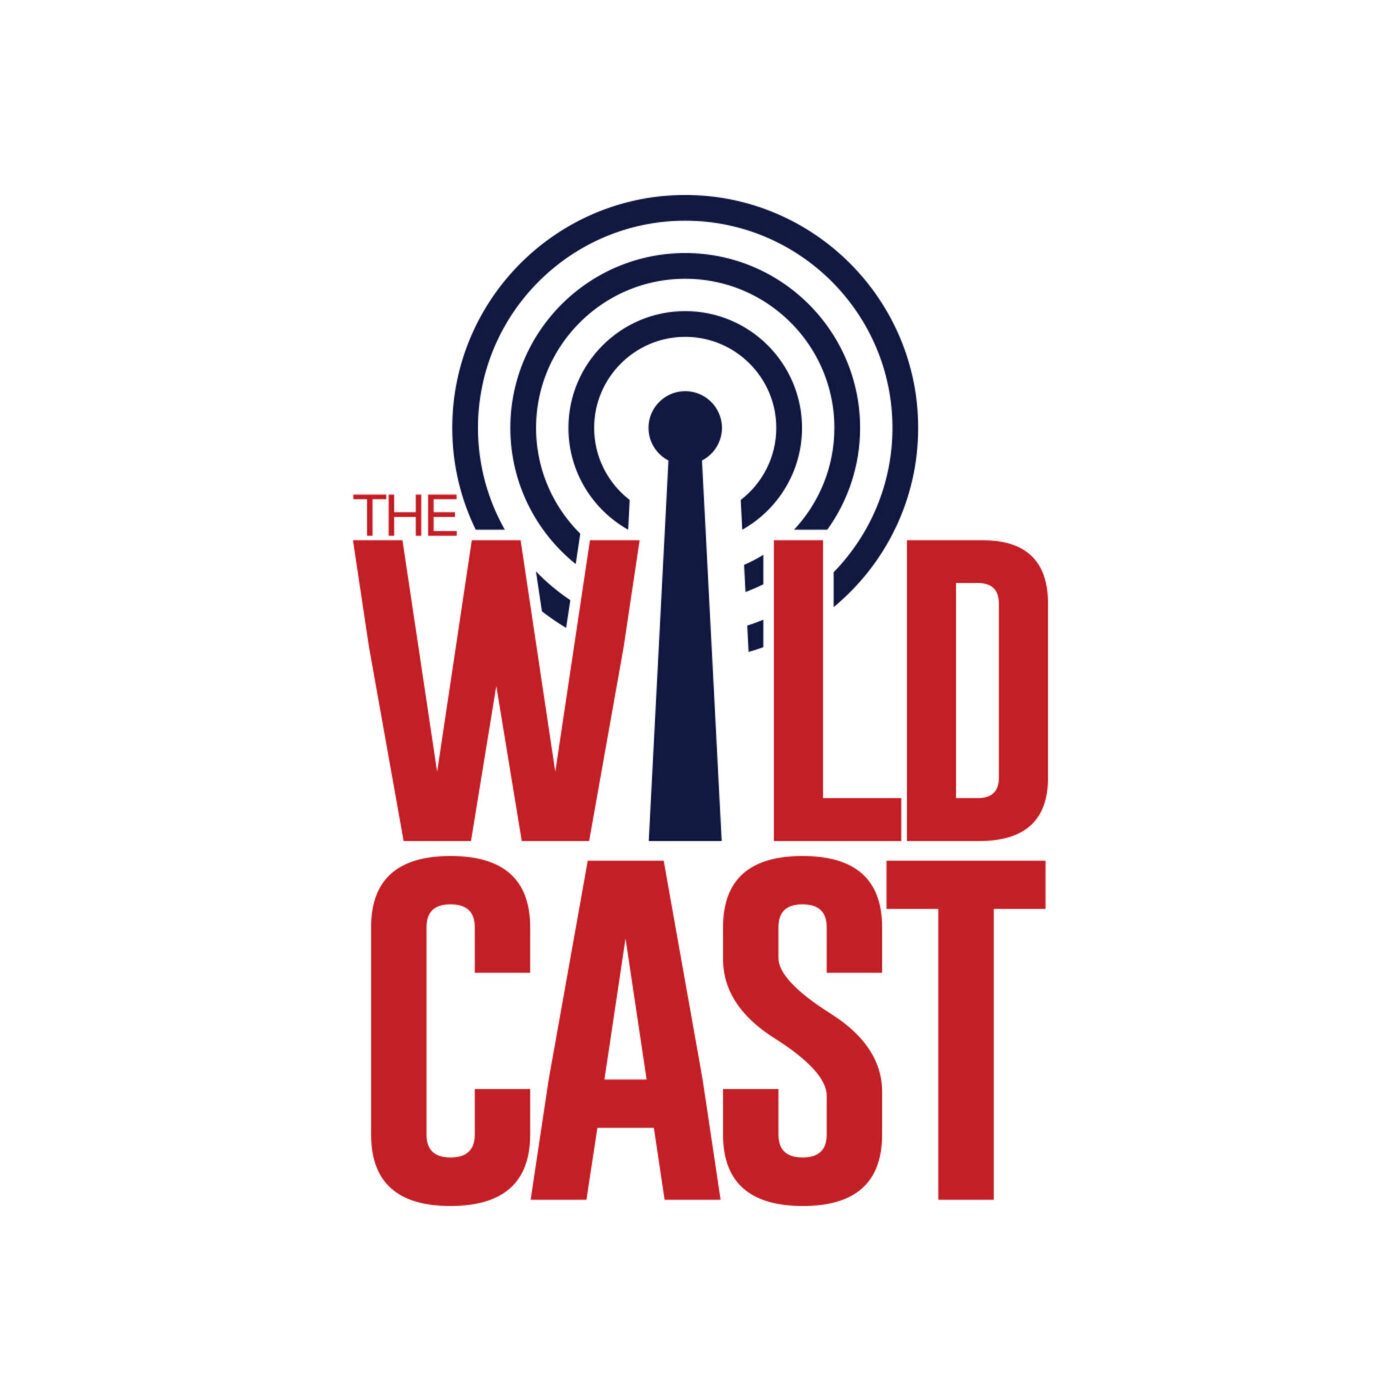 The Wildcast, Episode 375: Maya Nnaji on joining Arizona, studying medicine, and growing up with Zeke